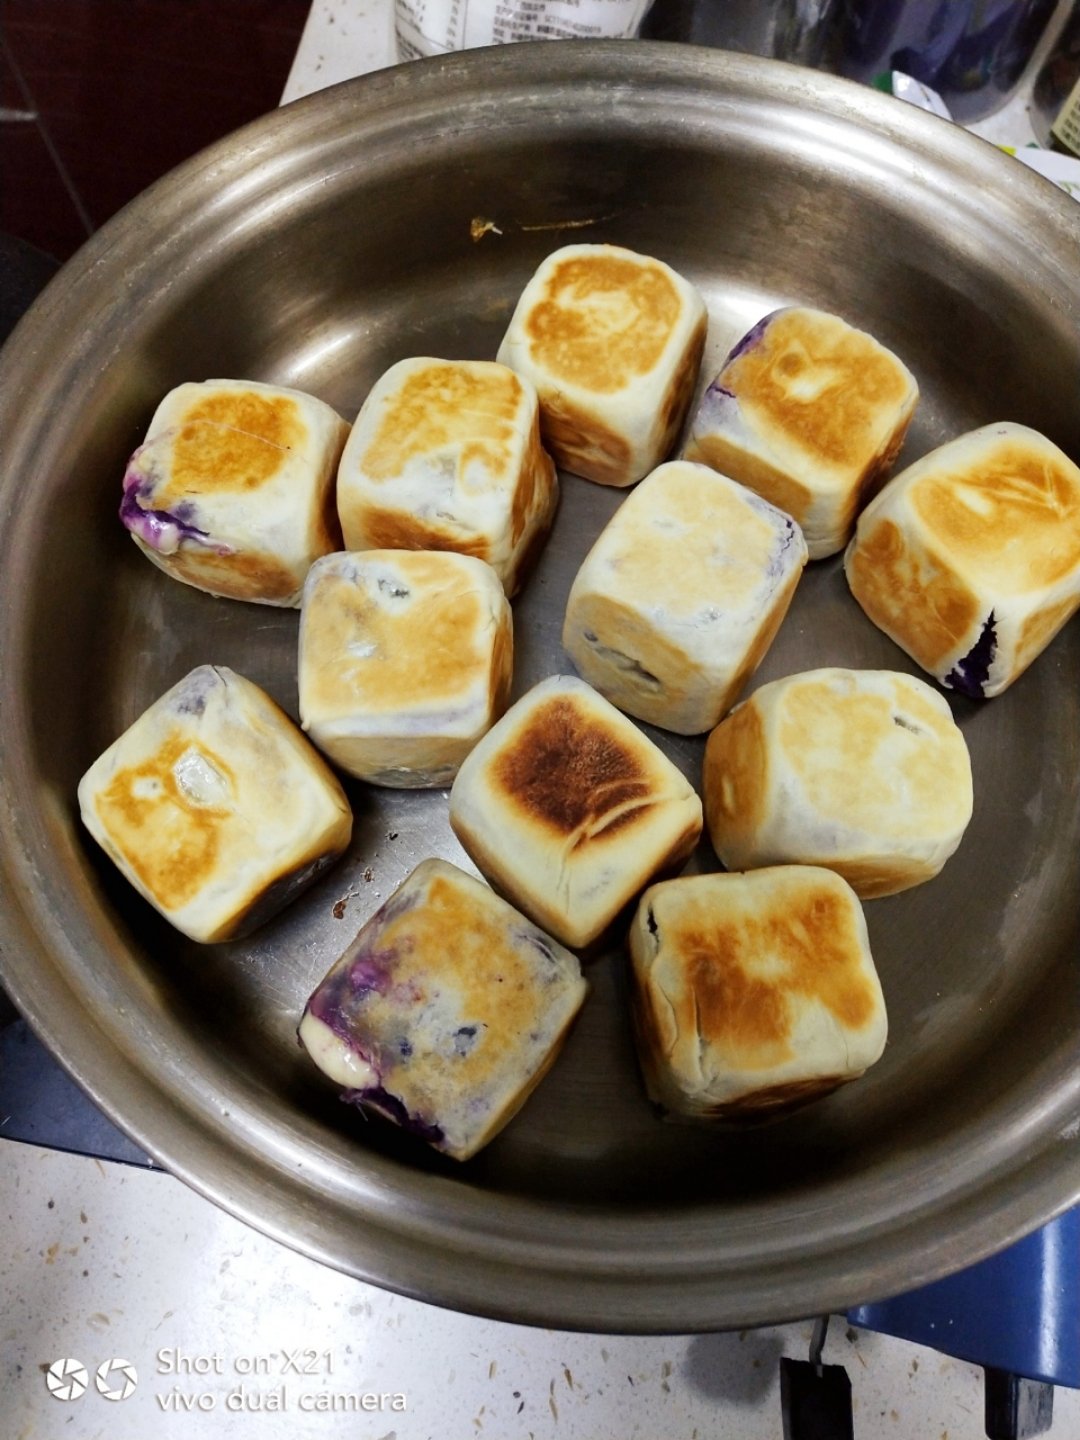 网红爆浆紫薯仙豆糕(低卡版)超长拉丝